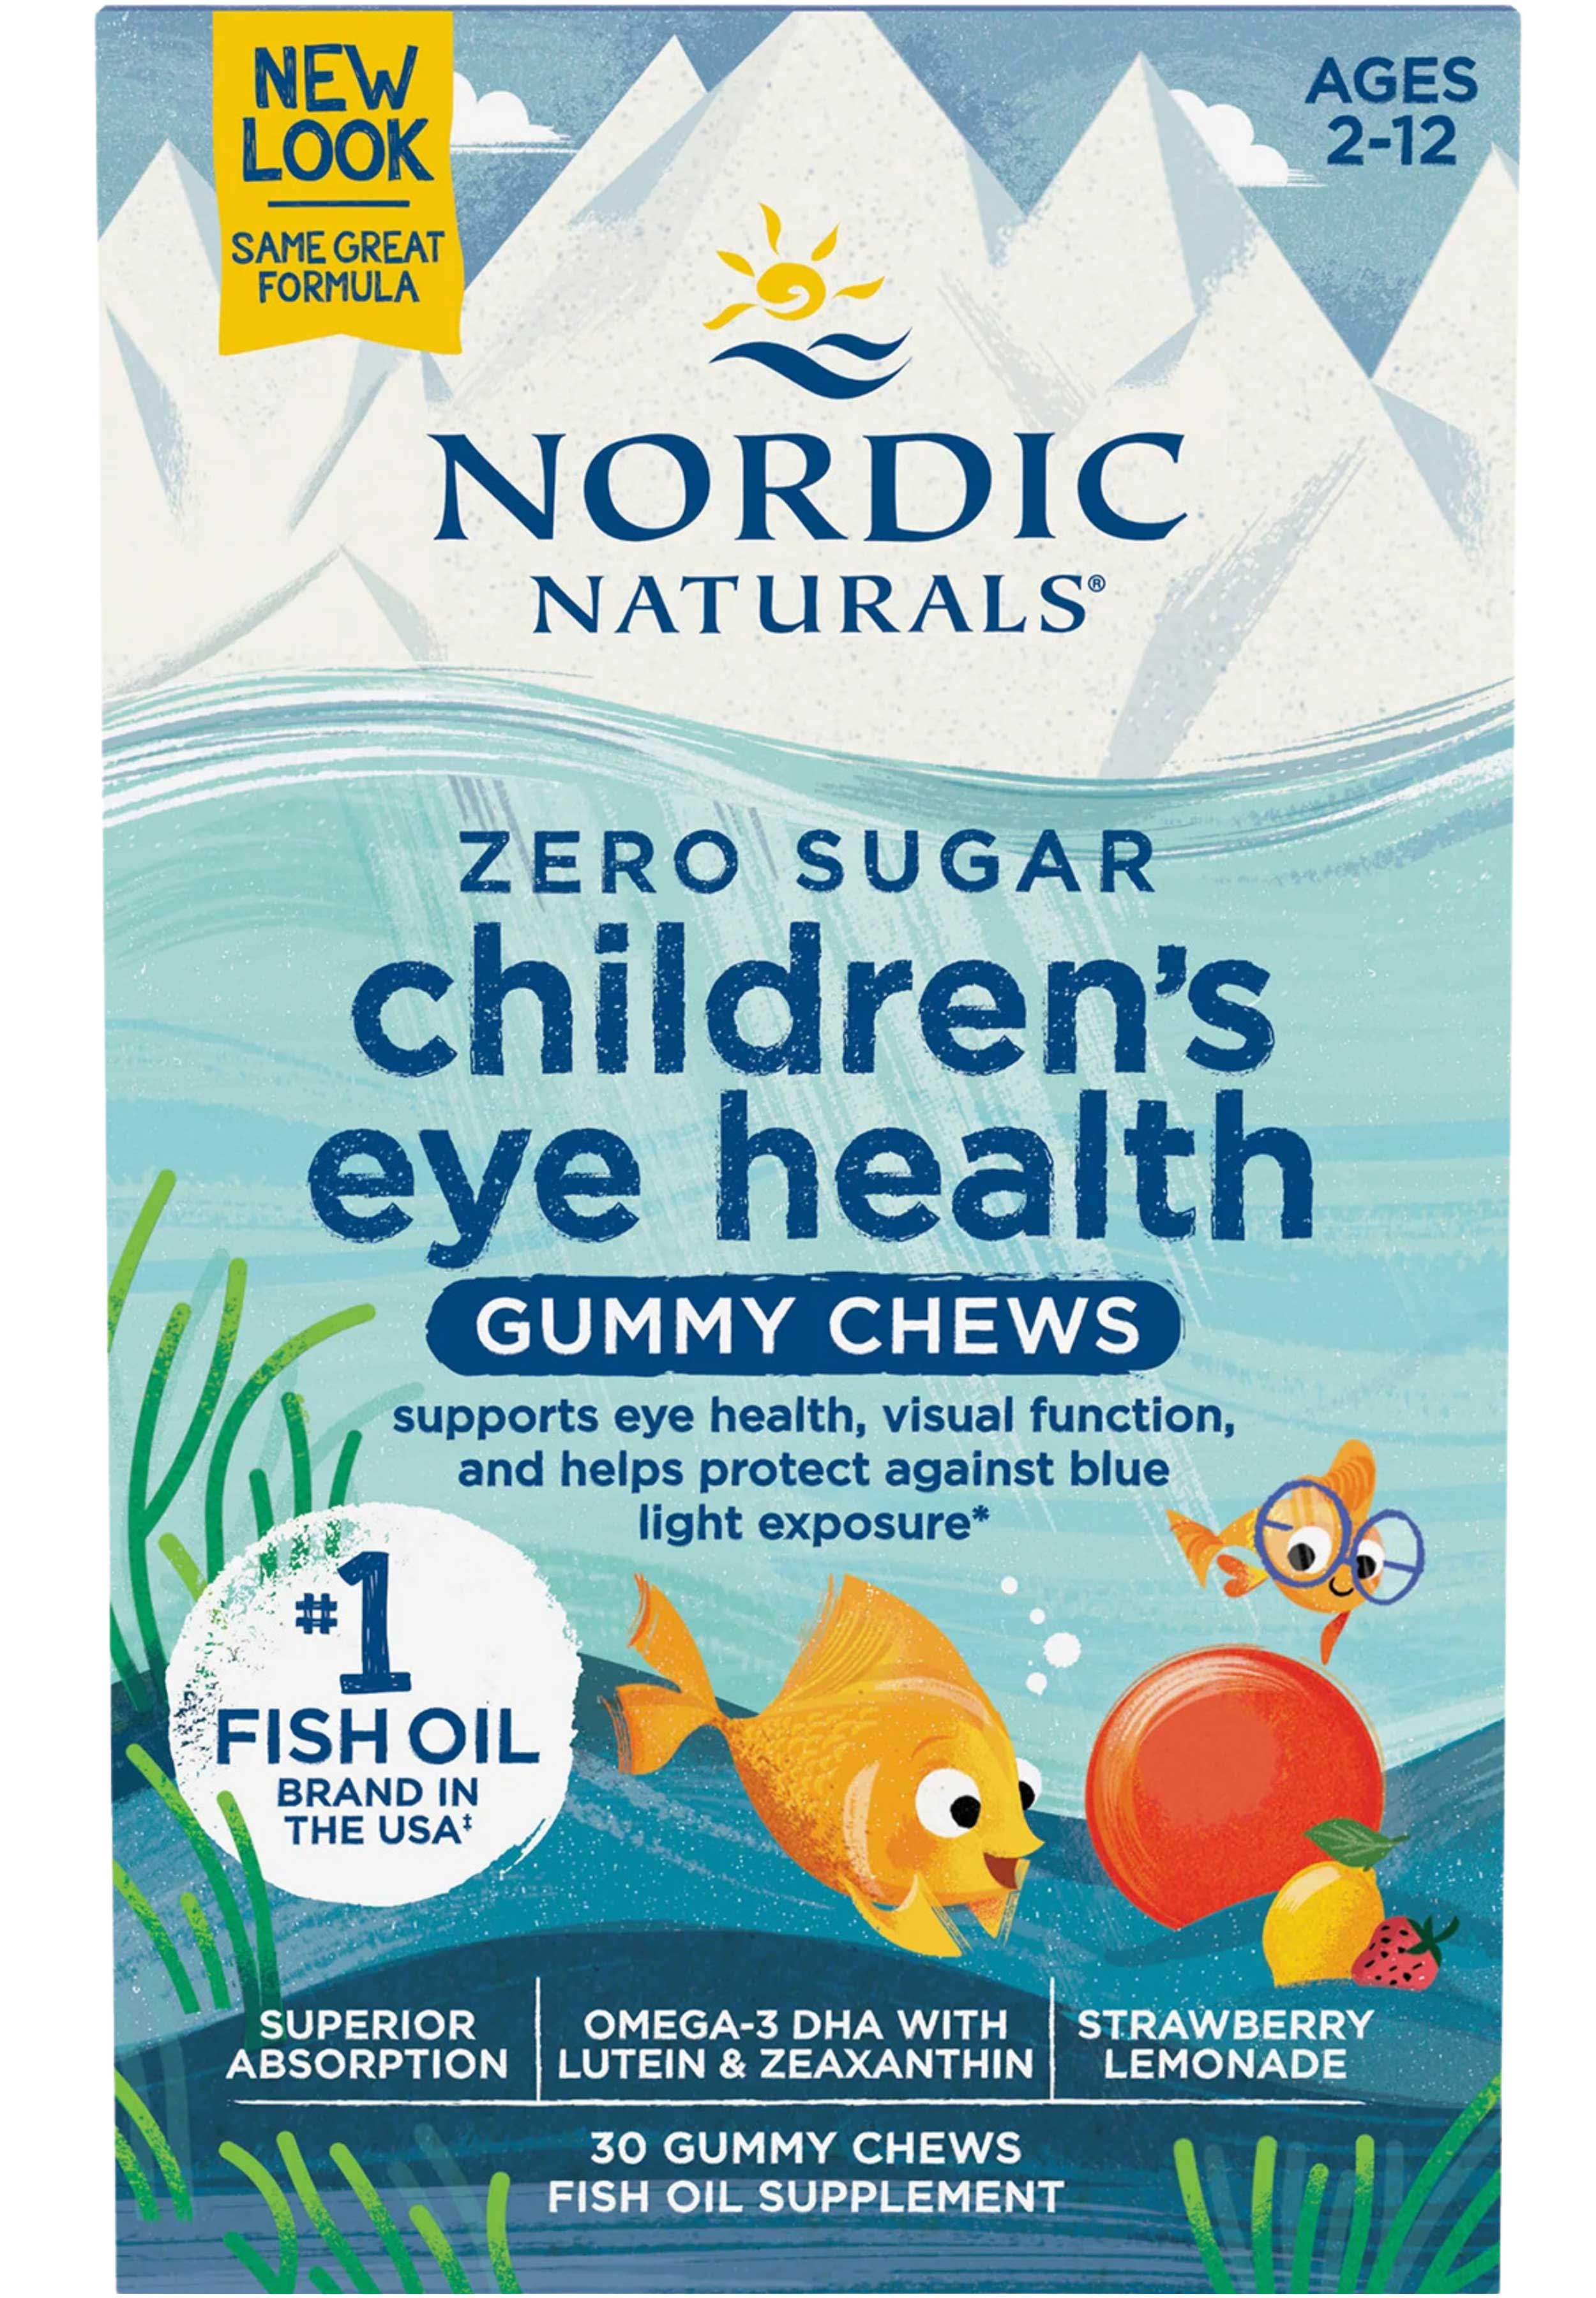 Nordic Naturals Children’s Eye Health (Zero Sugar)